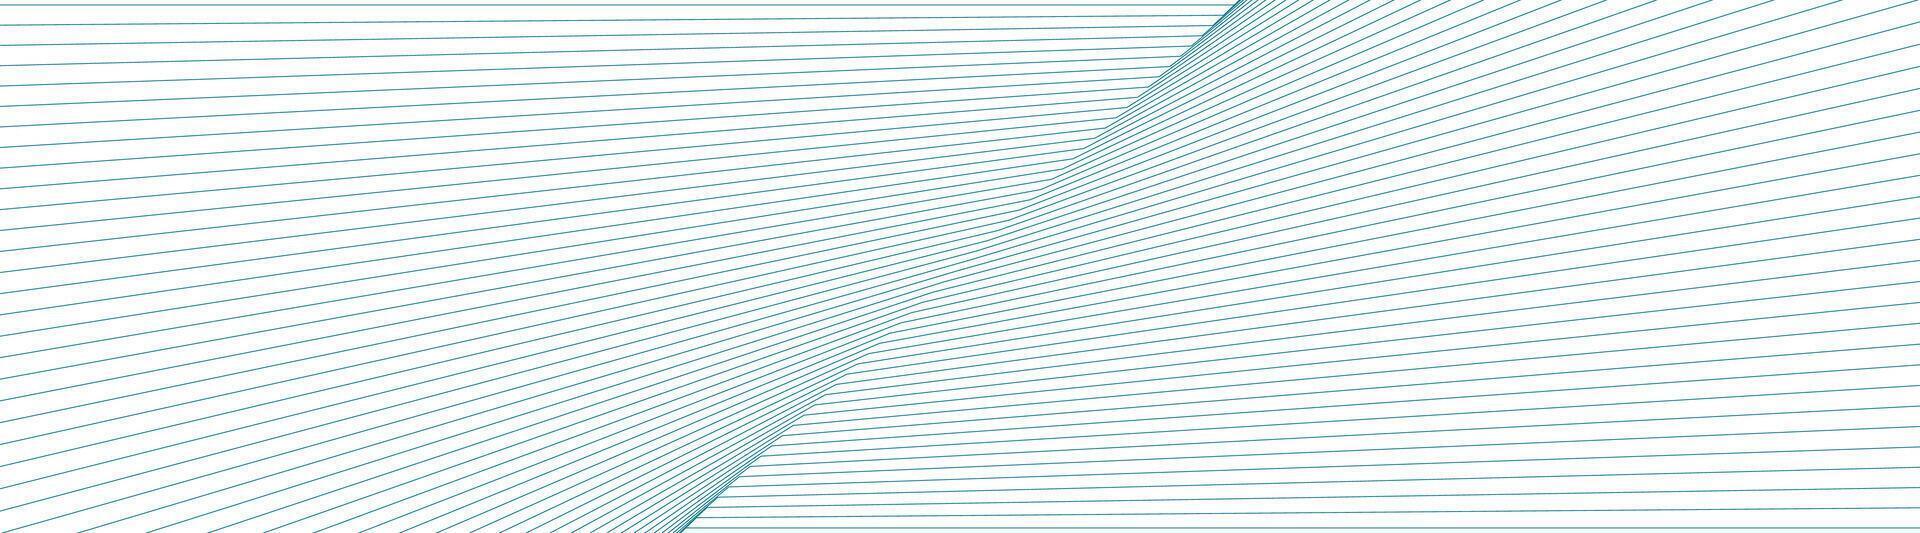 brilhante azul curvado linhas abstrato tecnologia fundo vetor